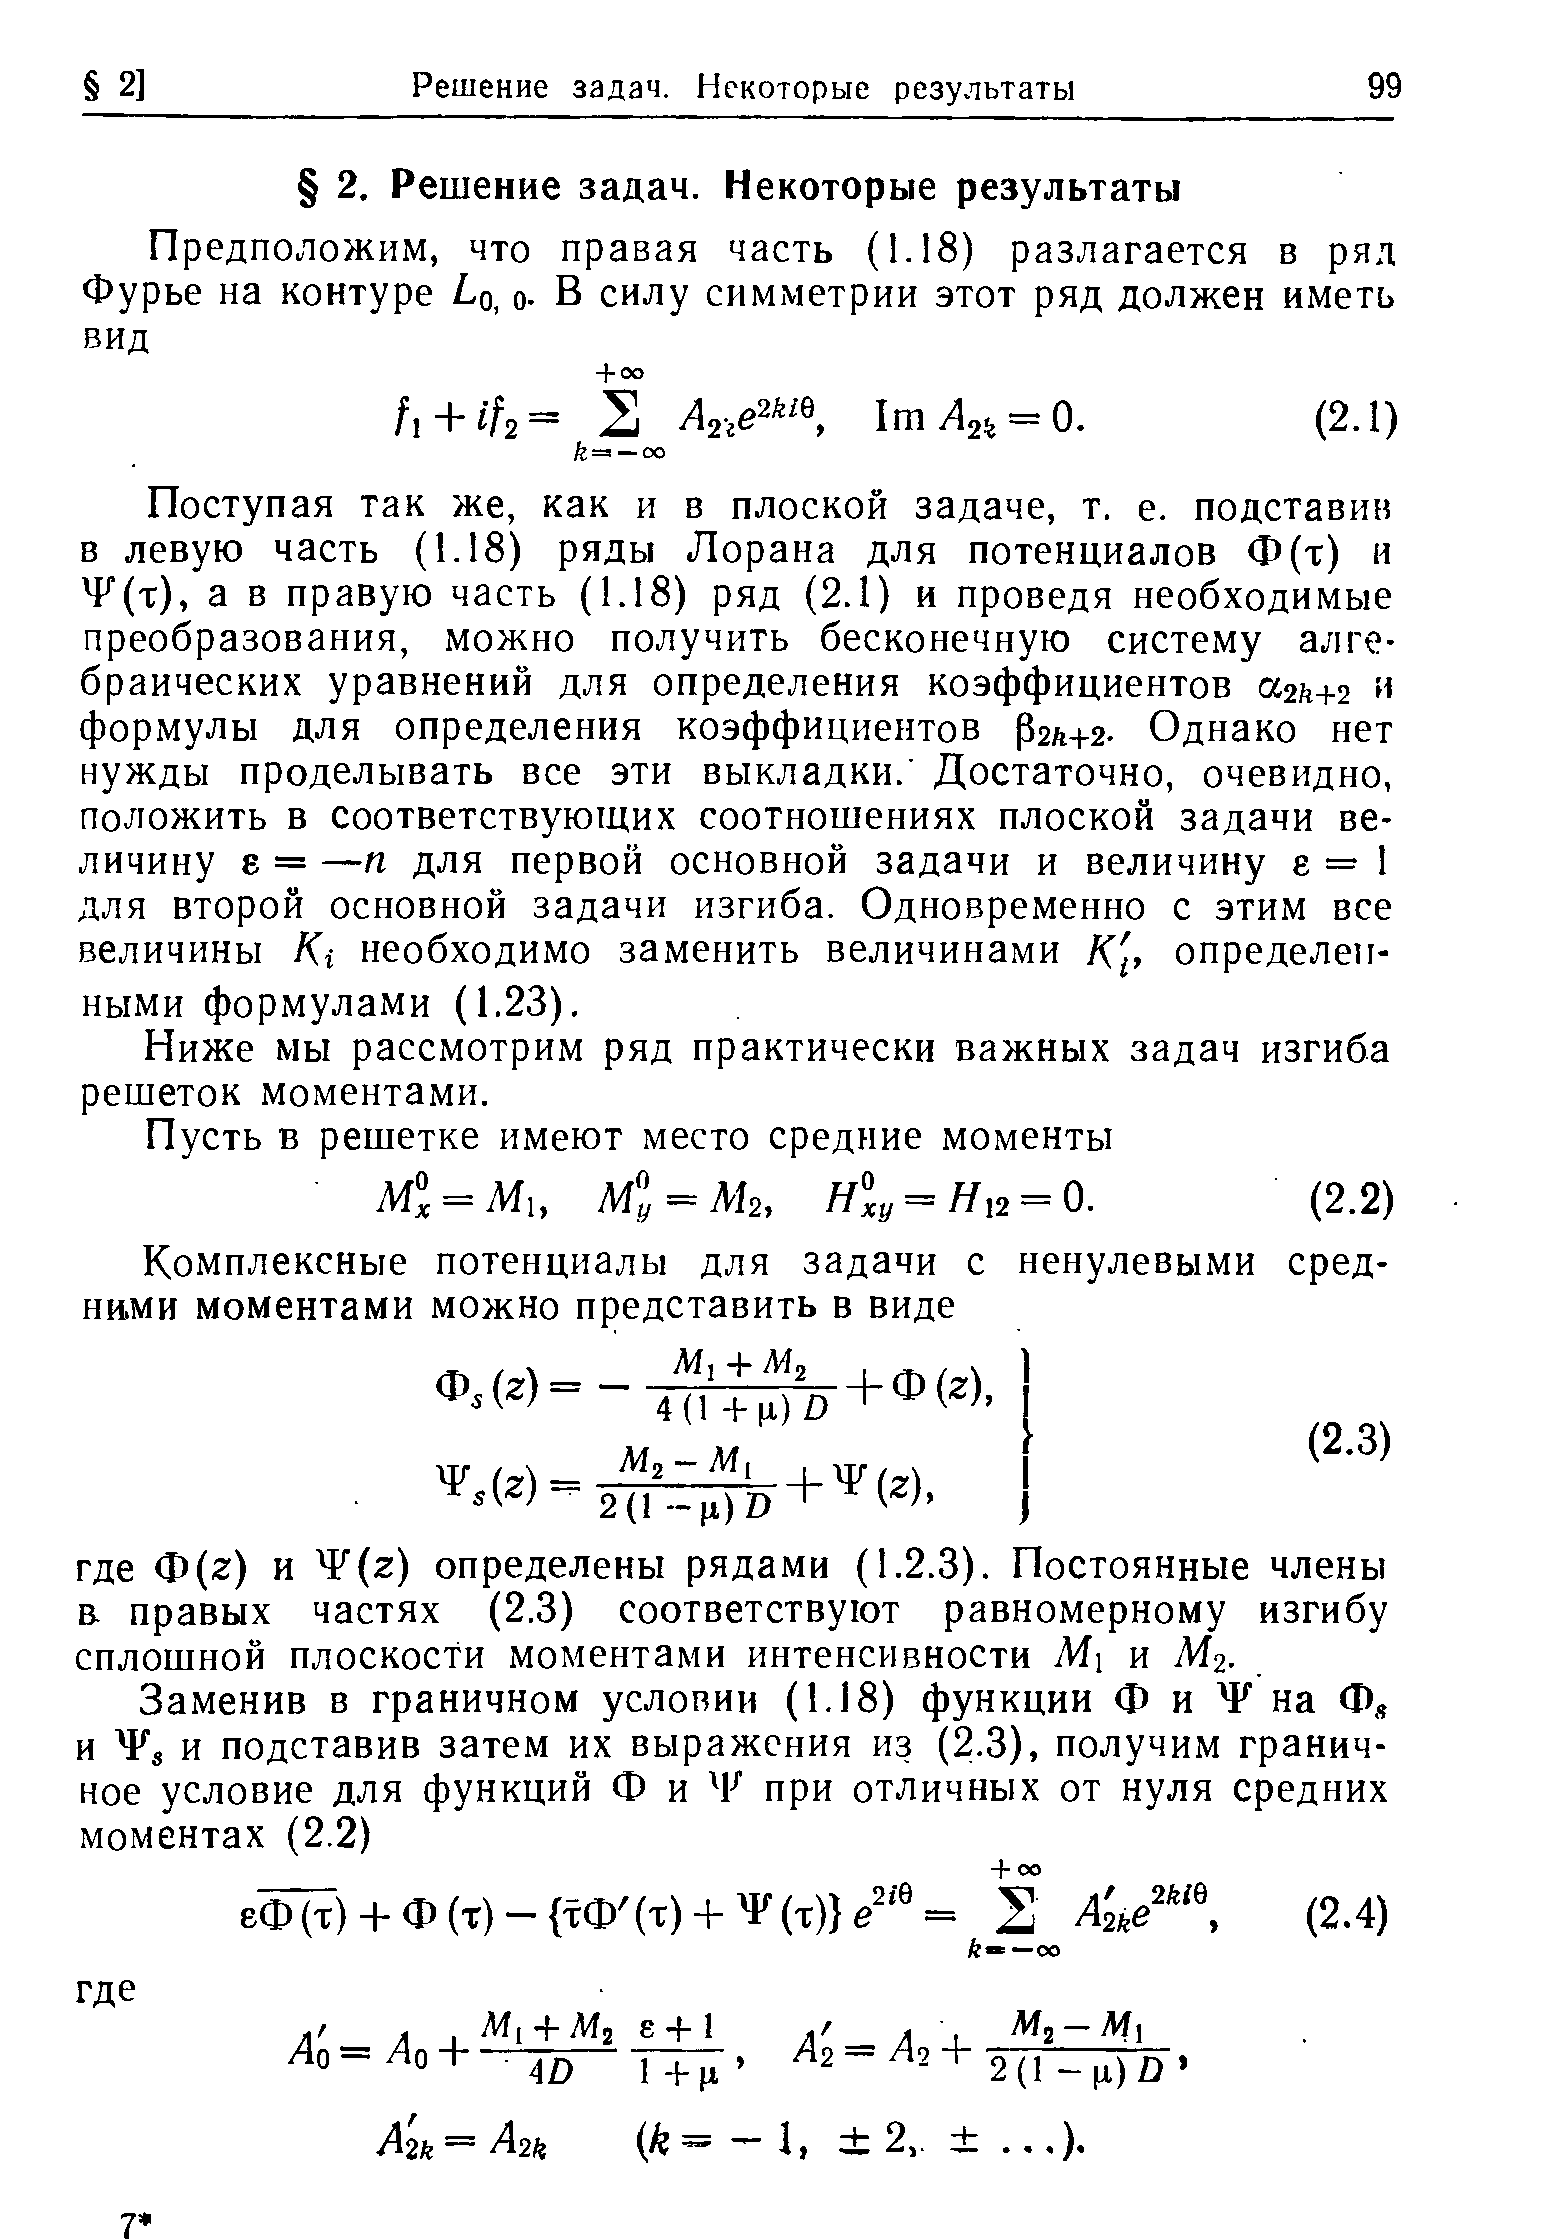 Поступая так же, как и в плоской задаче, т. е. подставив в левую часть (1.18) ряды Лорана для потенциалов Ф(т) и F(t), а в правую часть (1.18) ряд (2.1) и проведя необходимые преобразования, можно получить бесконечную систему алгебраических уравнений для определения коэффициентов аг +г и формулы для определения коэффициентов Р2л+2- Однако нет нужды проделывать все эти выкладки. Достаточно, очевидно, положить в соответствующих соотношениях плоской задачи величину Е = —п для первой основной задачи и величину е = 1 для второй основной задачи изгиба. Одновременно с этим все величины Ki необходимо заменить величинами К, определенными формулами (1.23).
